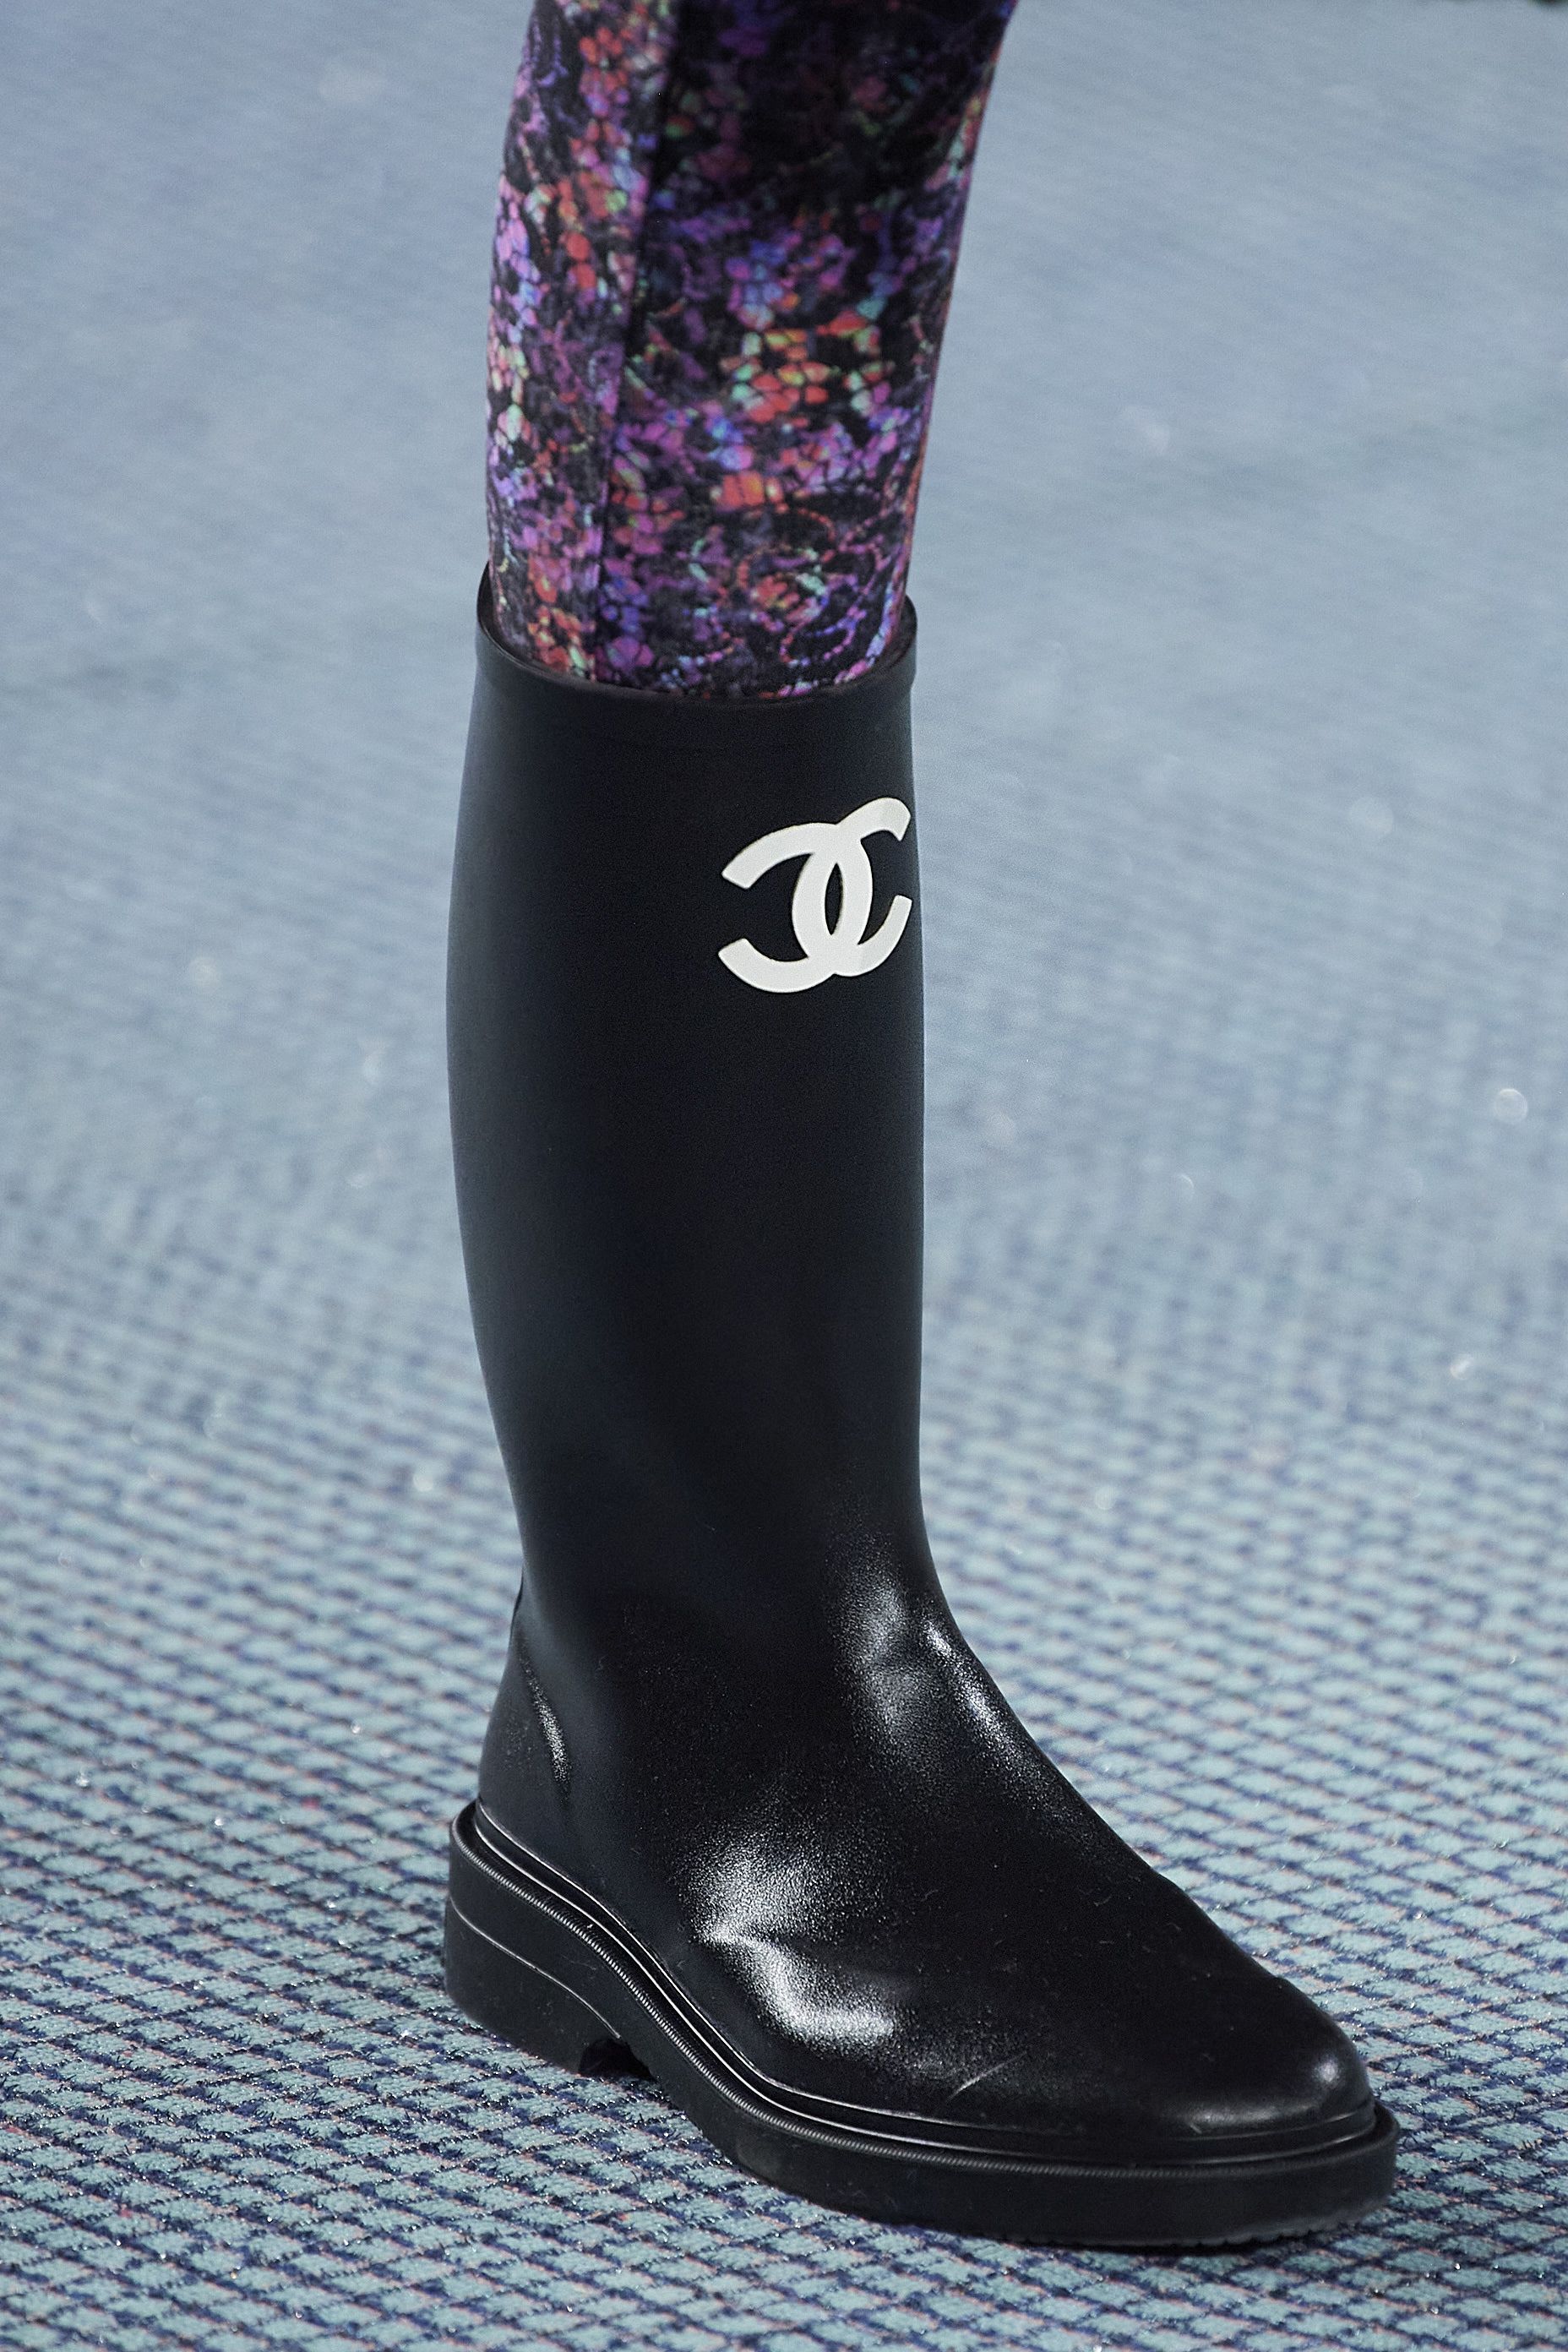 Schoenen damesschoenen Laarzen Regen en winterlaarzen & Sneeuwlaarzen Nieuwe collectie Mode herfst 